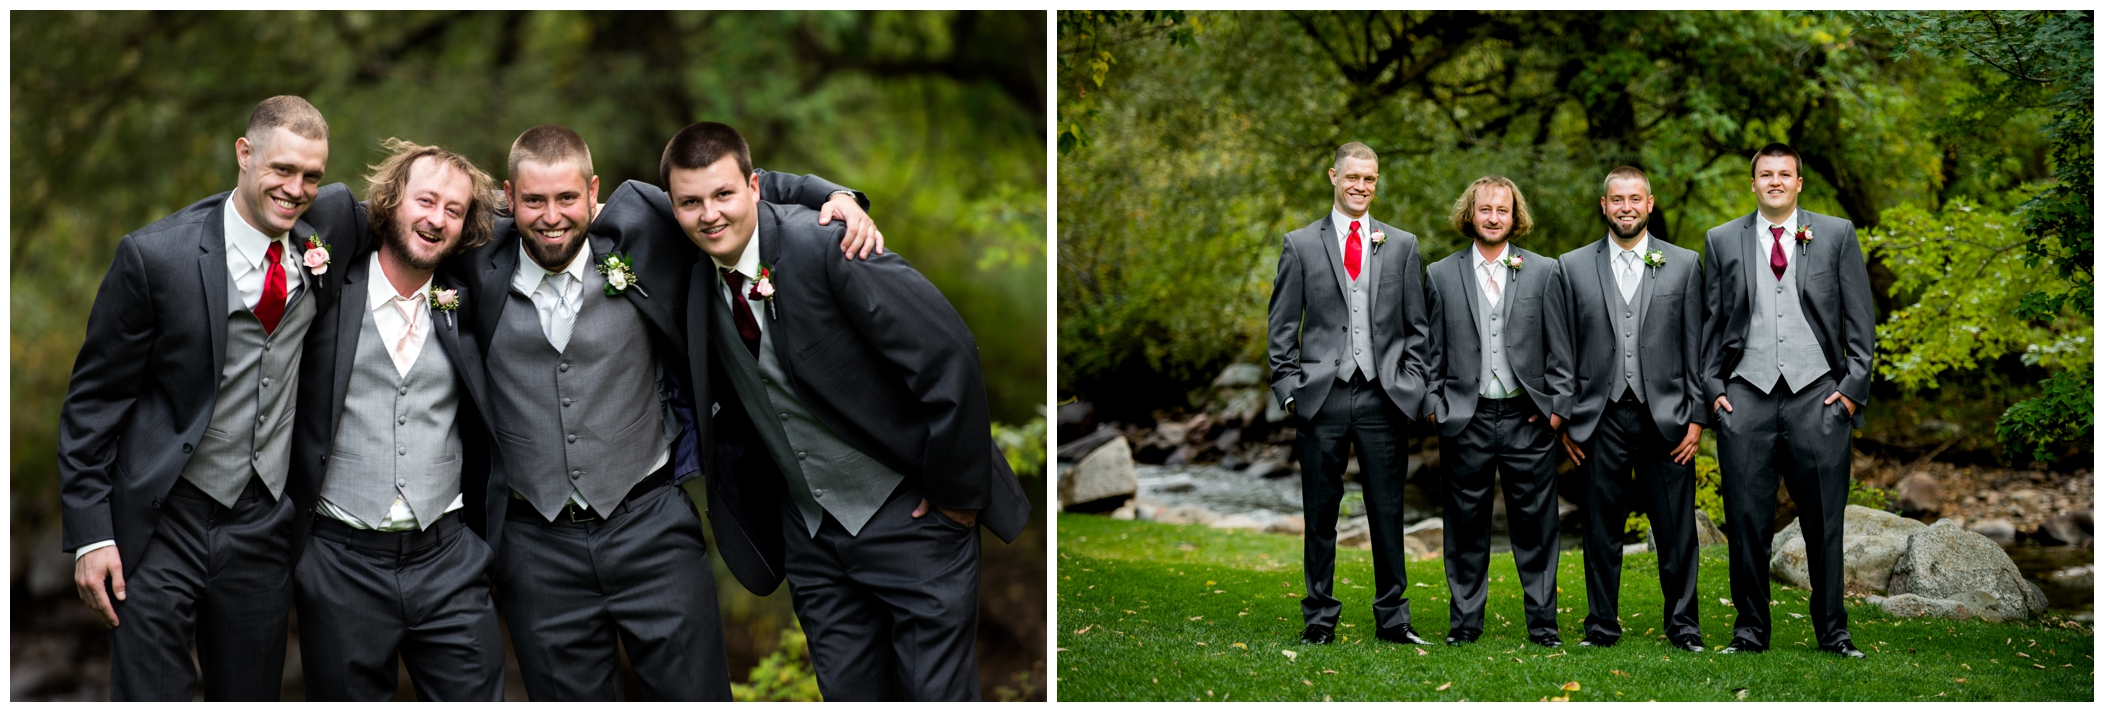 groomsmen at Boulder Creek wedgewood weddings